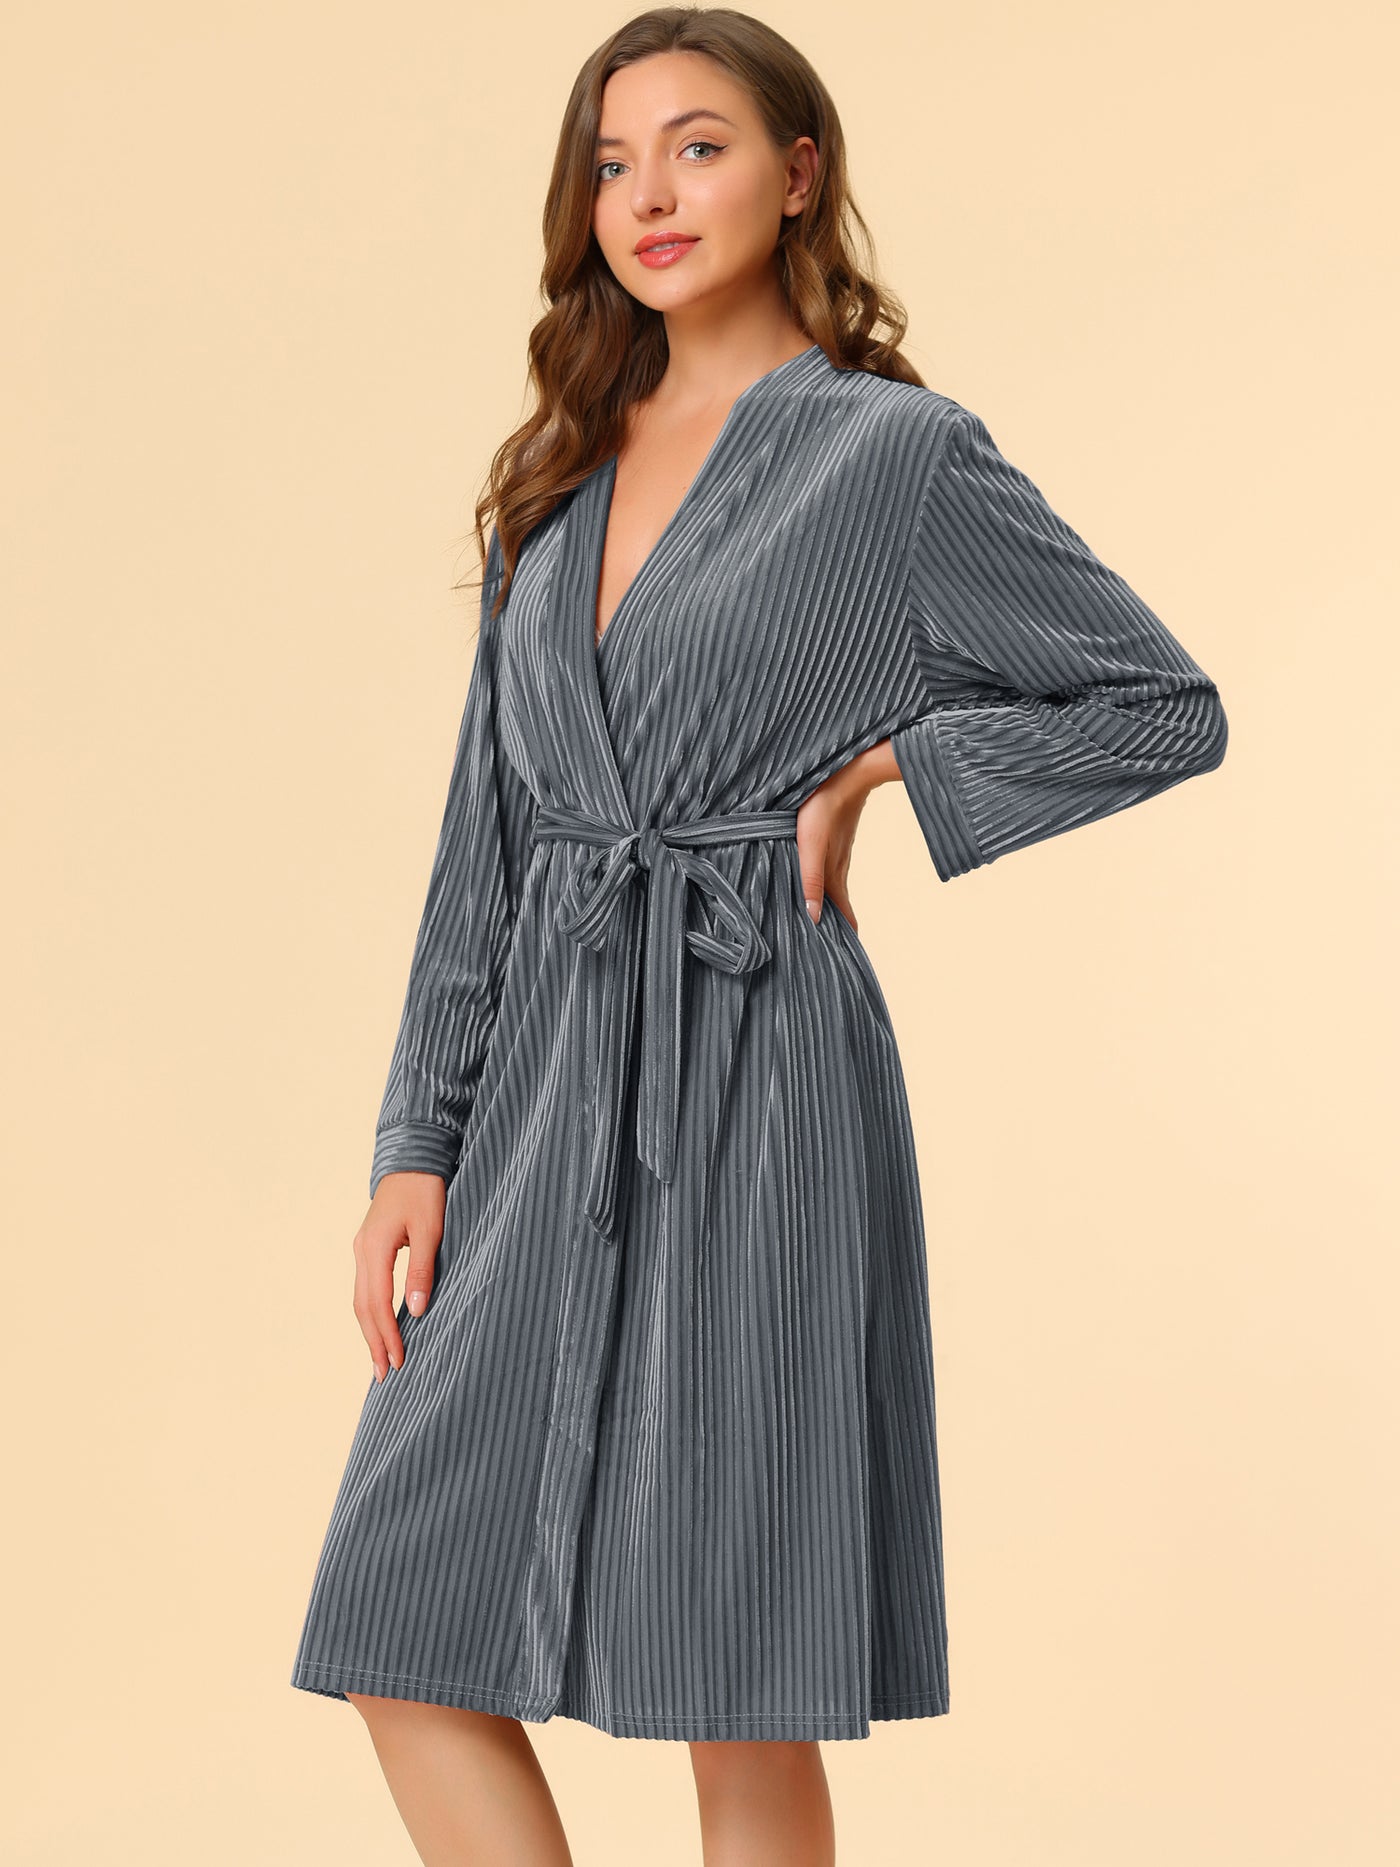 Allegra K Velvet Bathrobe Soft Lounge Pajamas Sleepwear Tie Waist Flannel Robe